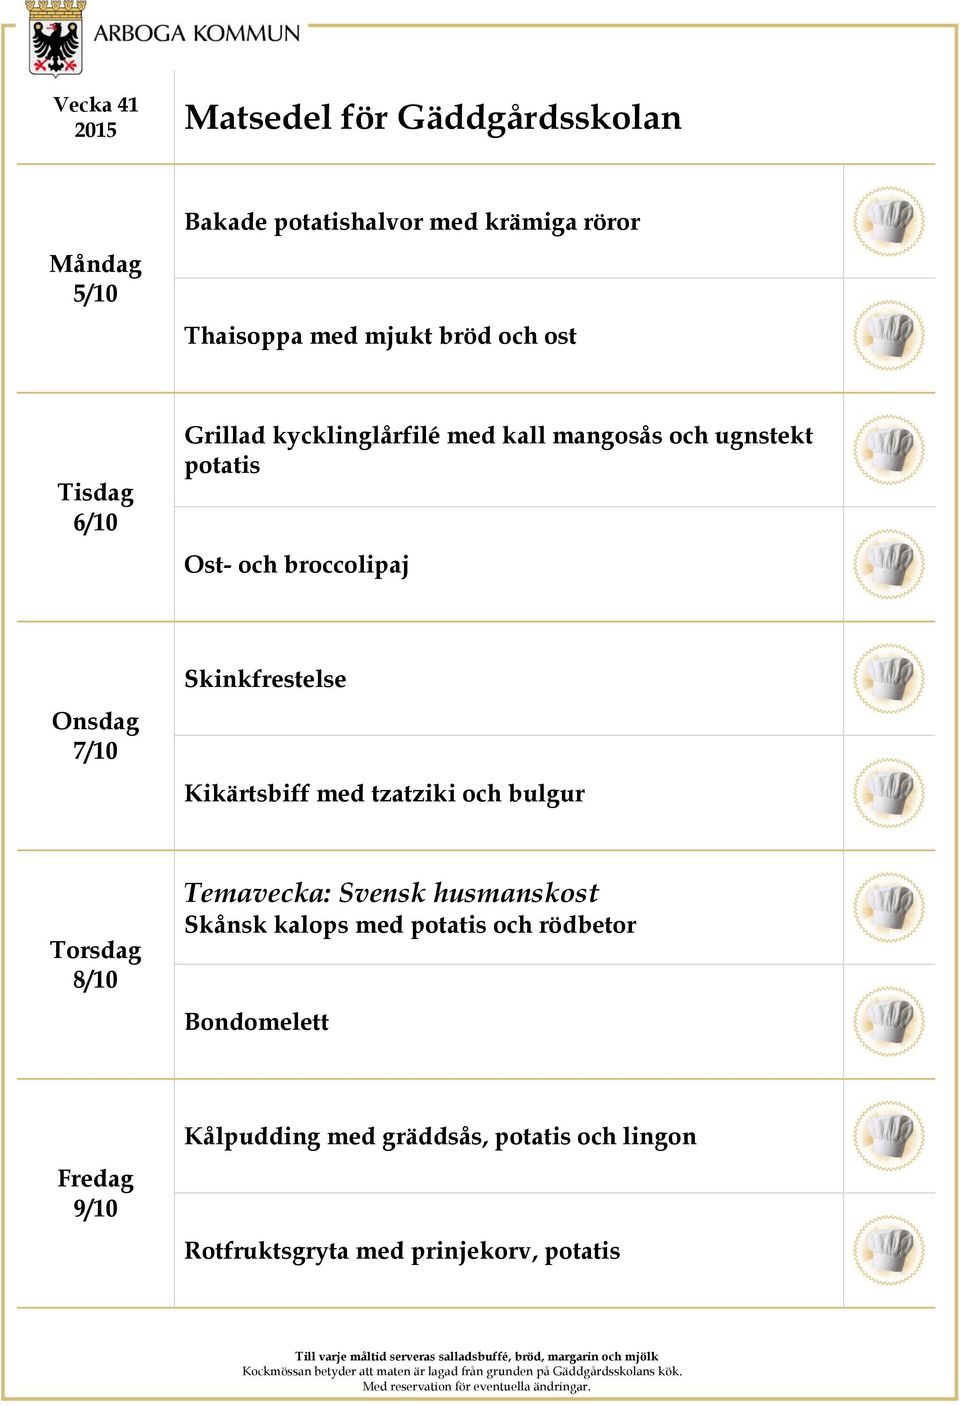 Kikärtsbiff med tzatziki och bulgur 8/10 Temavecka: Svensk husmanskost Skånsk kalops med potatis och